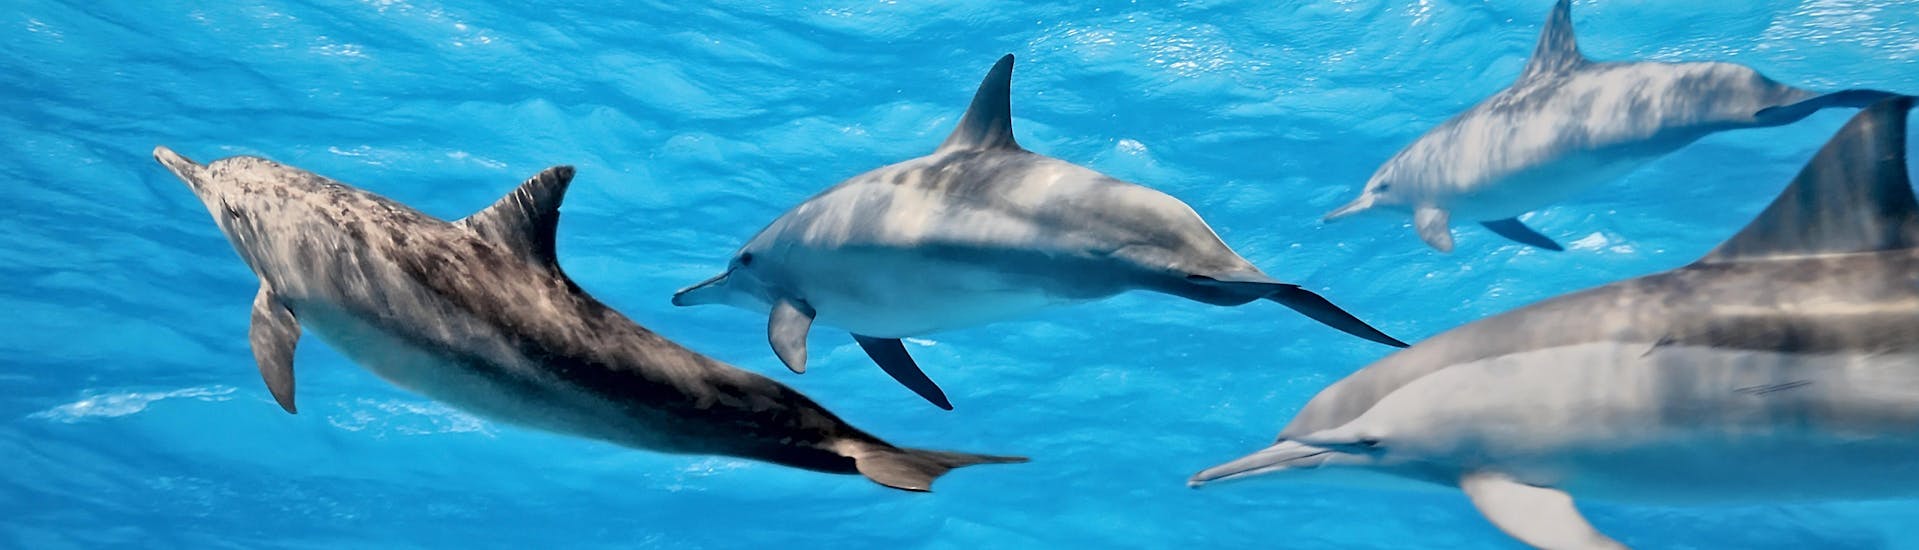 Observez les dauphins nager pendant votre balade en bateau et regardez-les sauter.